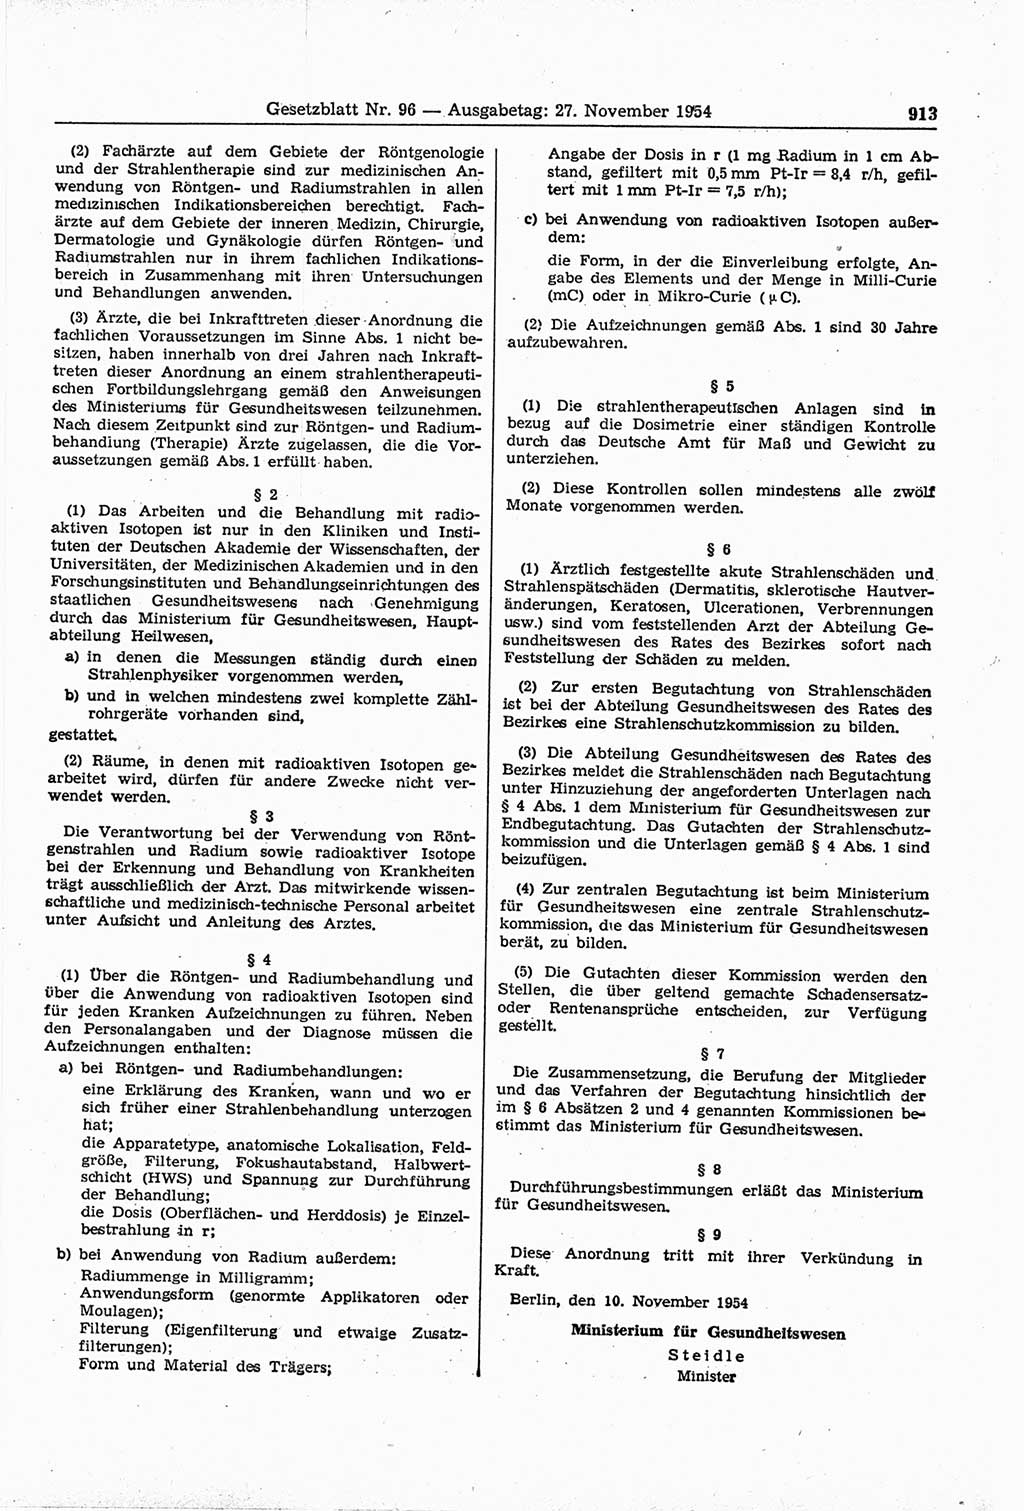 Gesetzblatt (GBl.) der Deutschen Demokratischen Republik (DDR) 1954, Seite 913 (GBl. DDR 1954, S. 913)